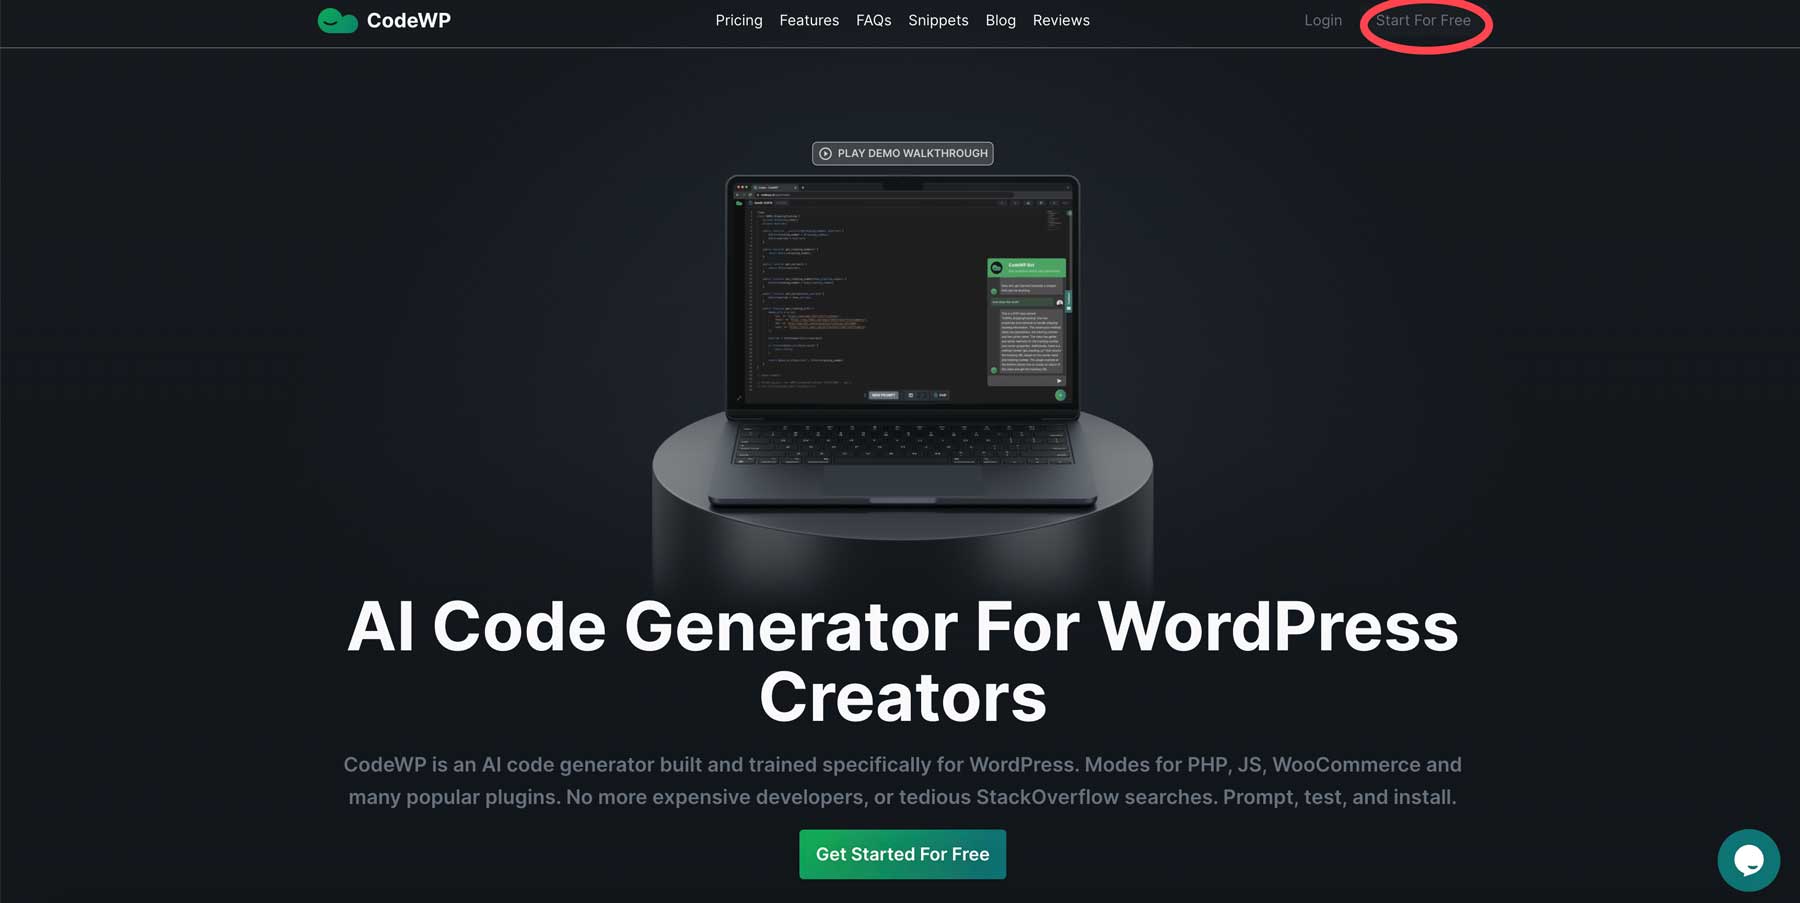 create CodeWP account